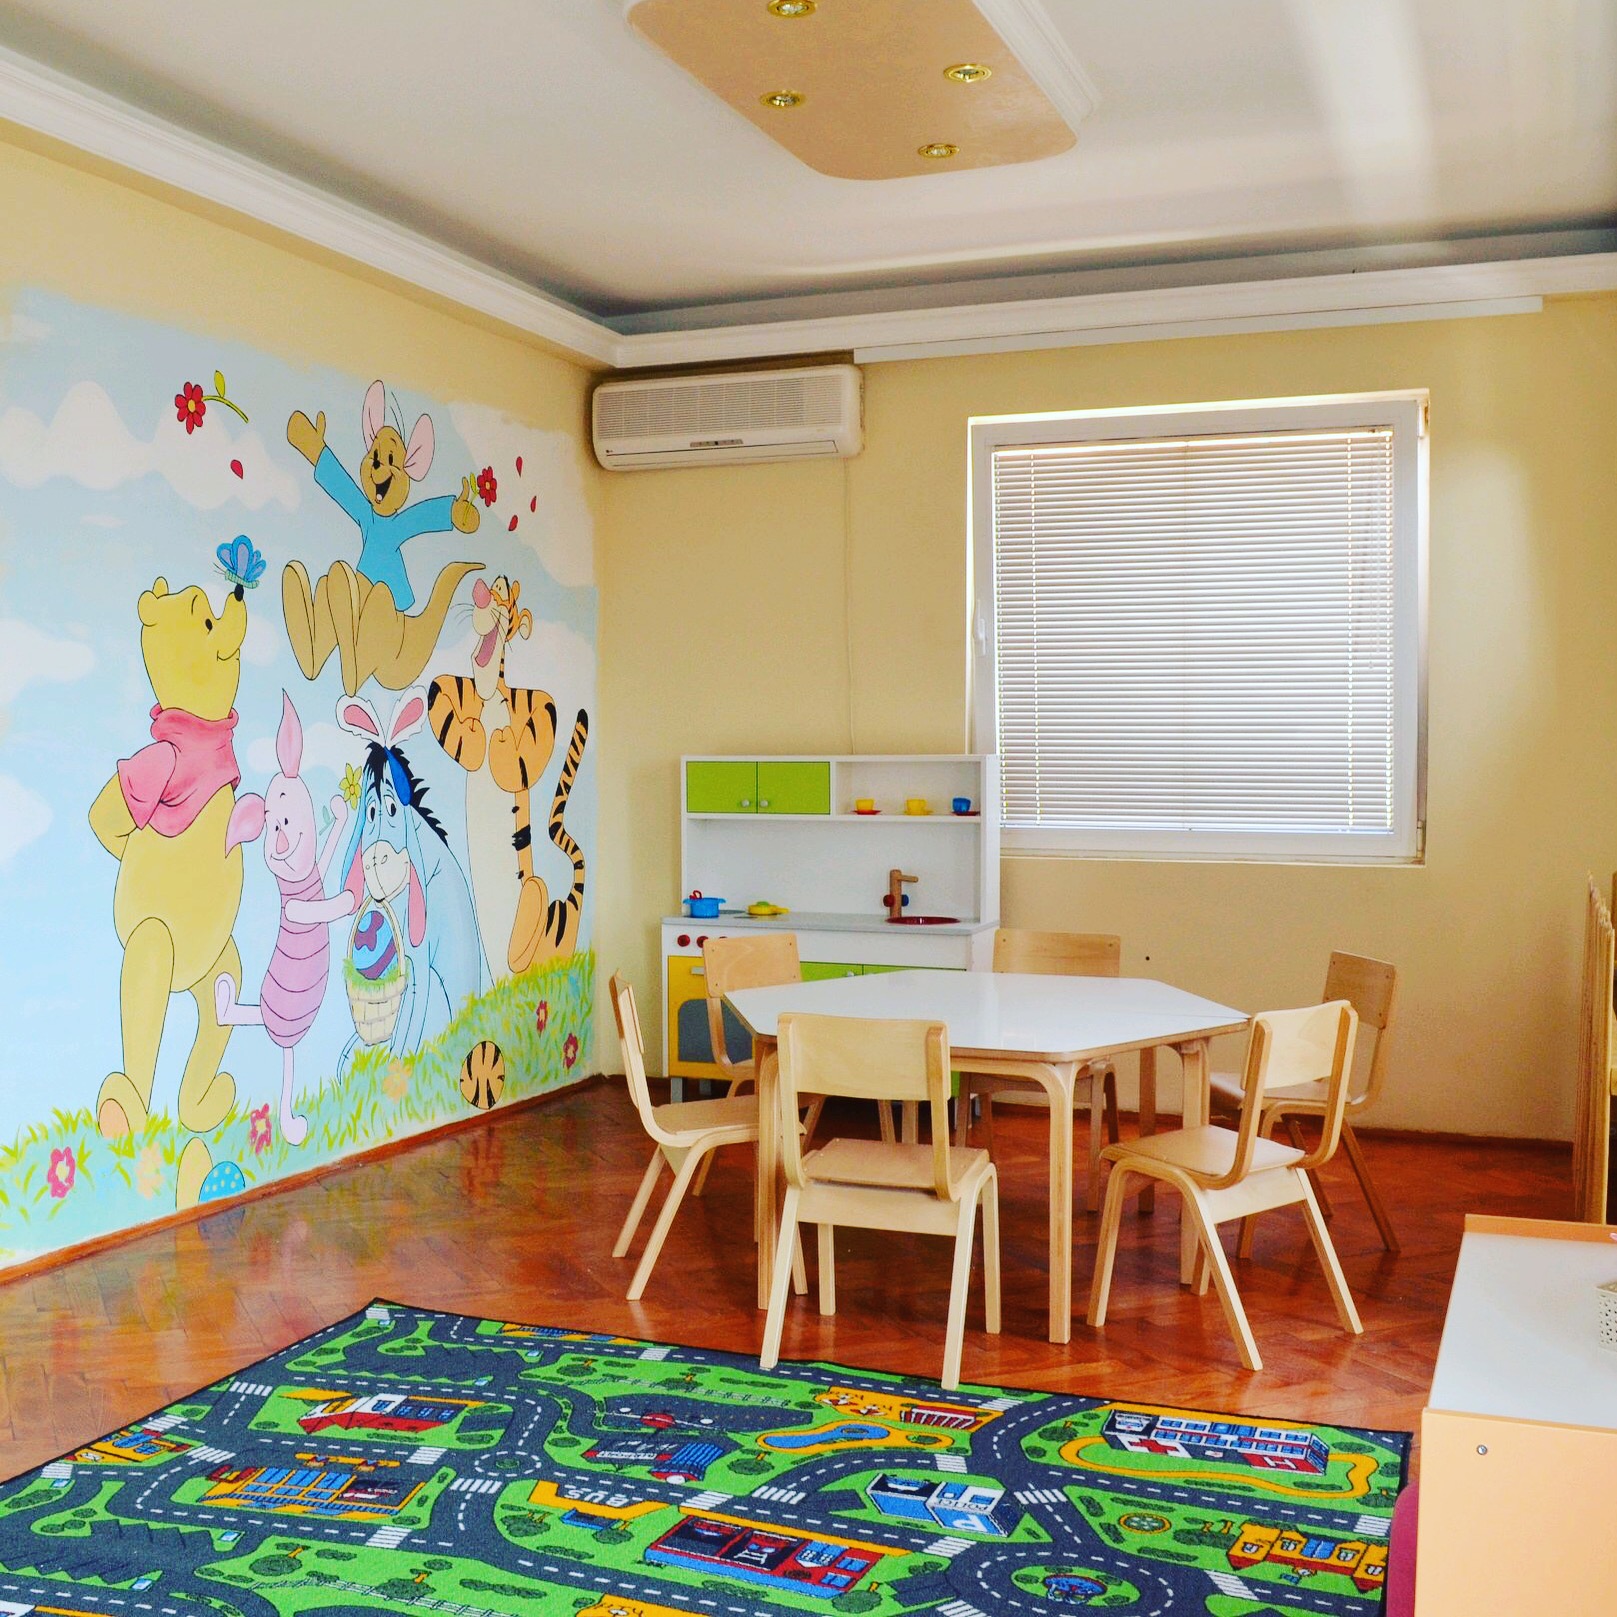 MASTALICA KINDERGARTEN Kindergartens Belgrade - Photo 2